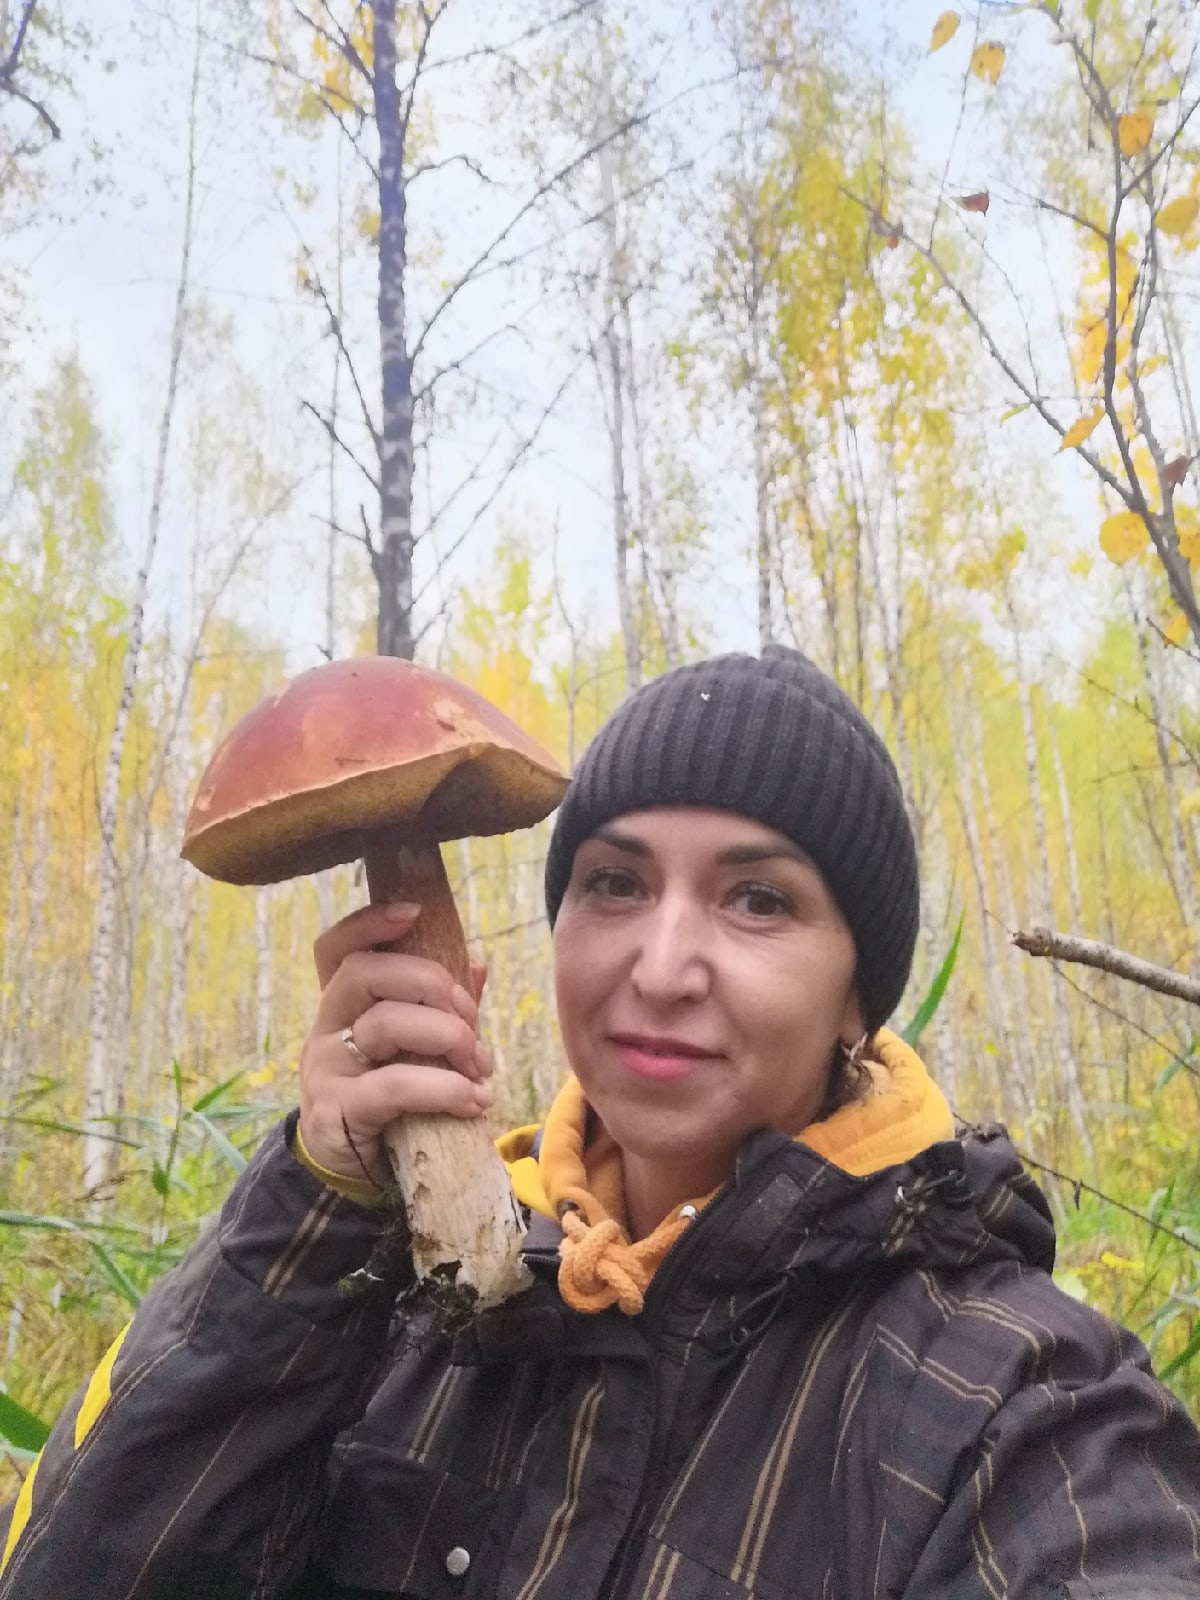 Ярославна поделилась своей фотографией с грибом, который нашла в деревне Искробол